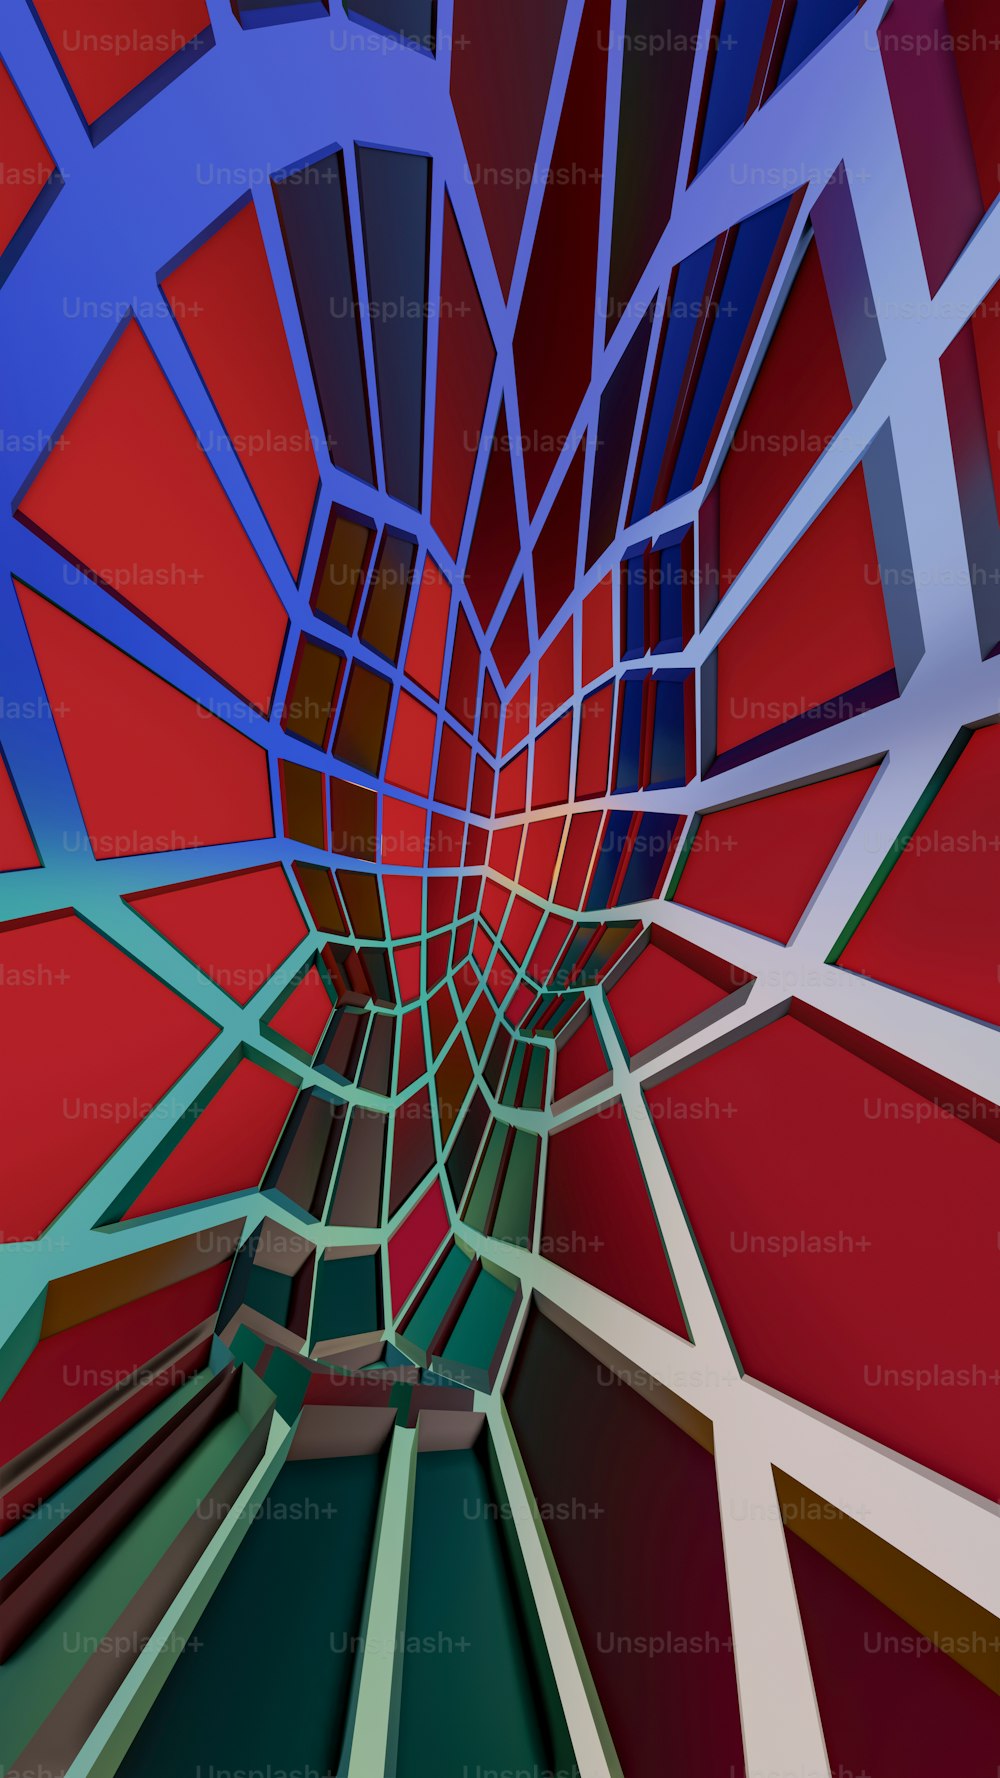 Une image abstraite d’une structure rouge et bleue